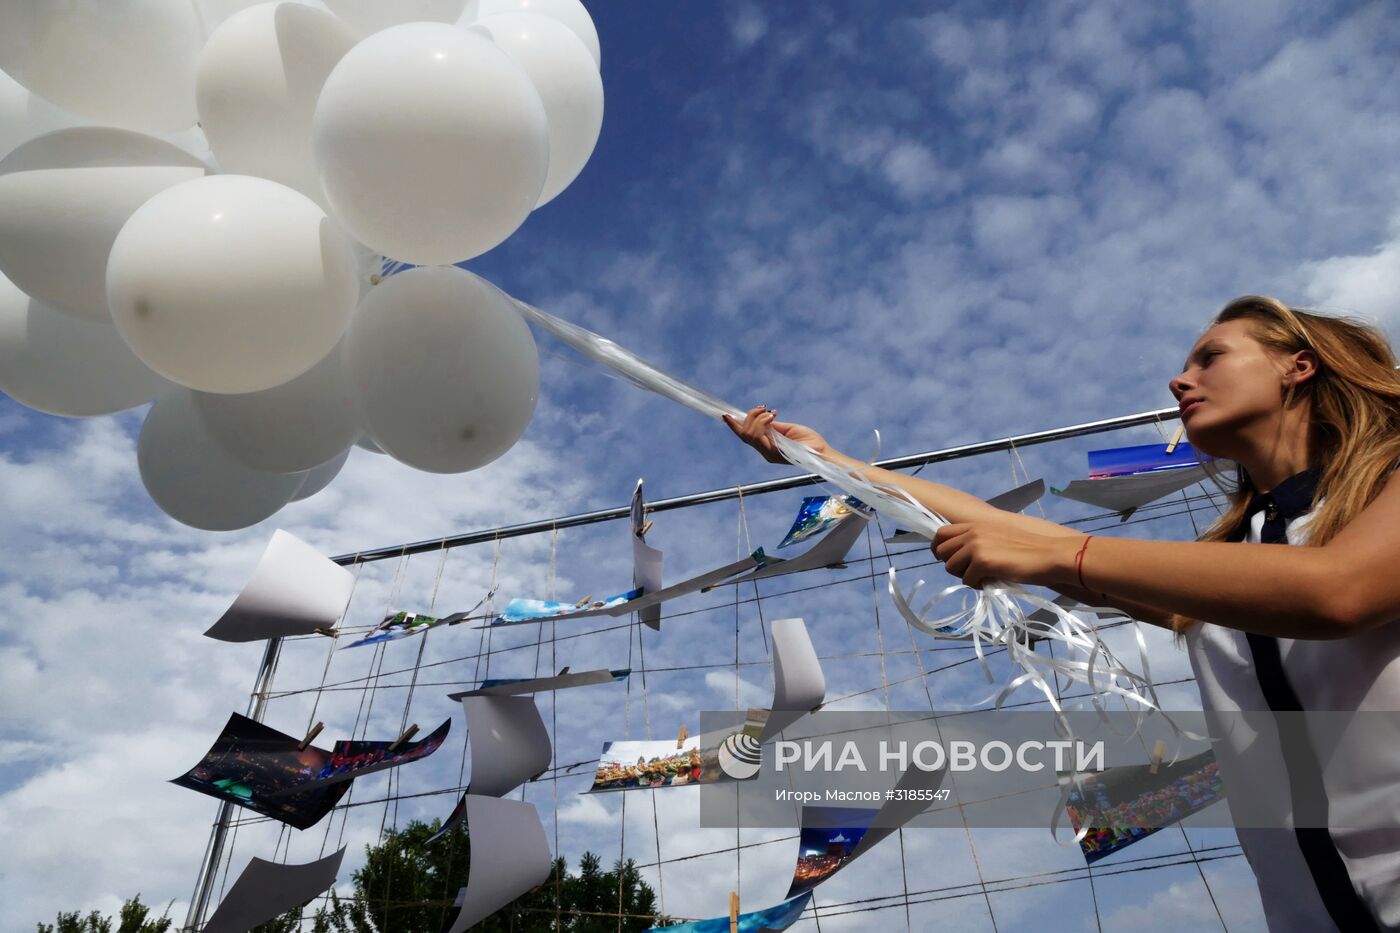 "Республиканский марш солидарности" в Донецке